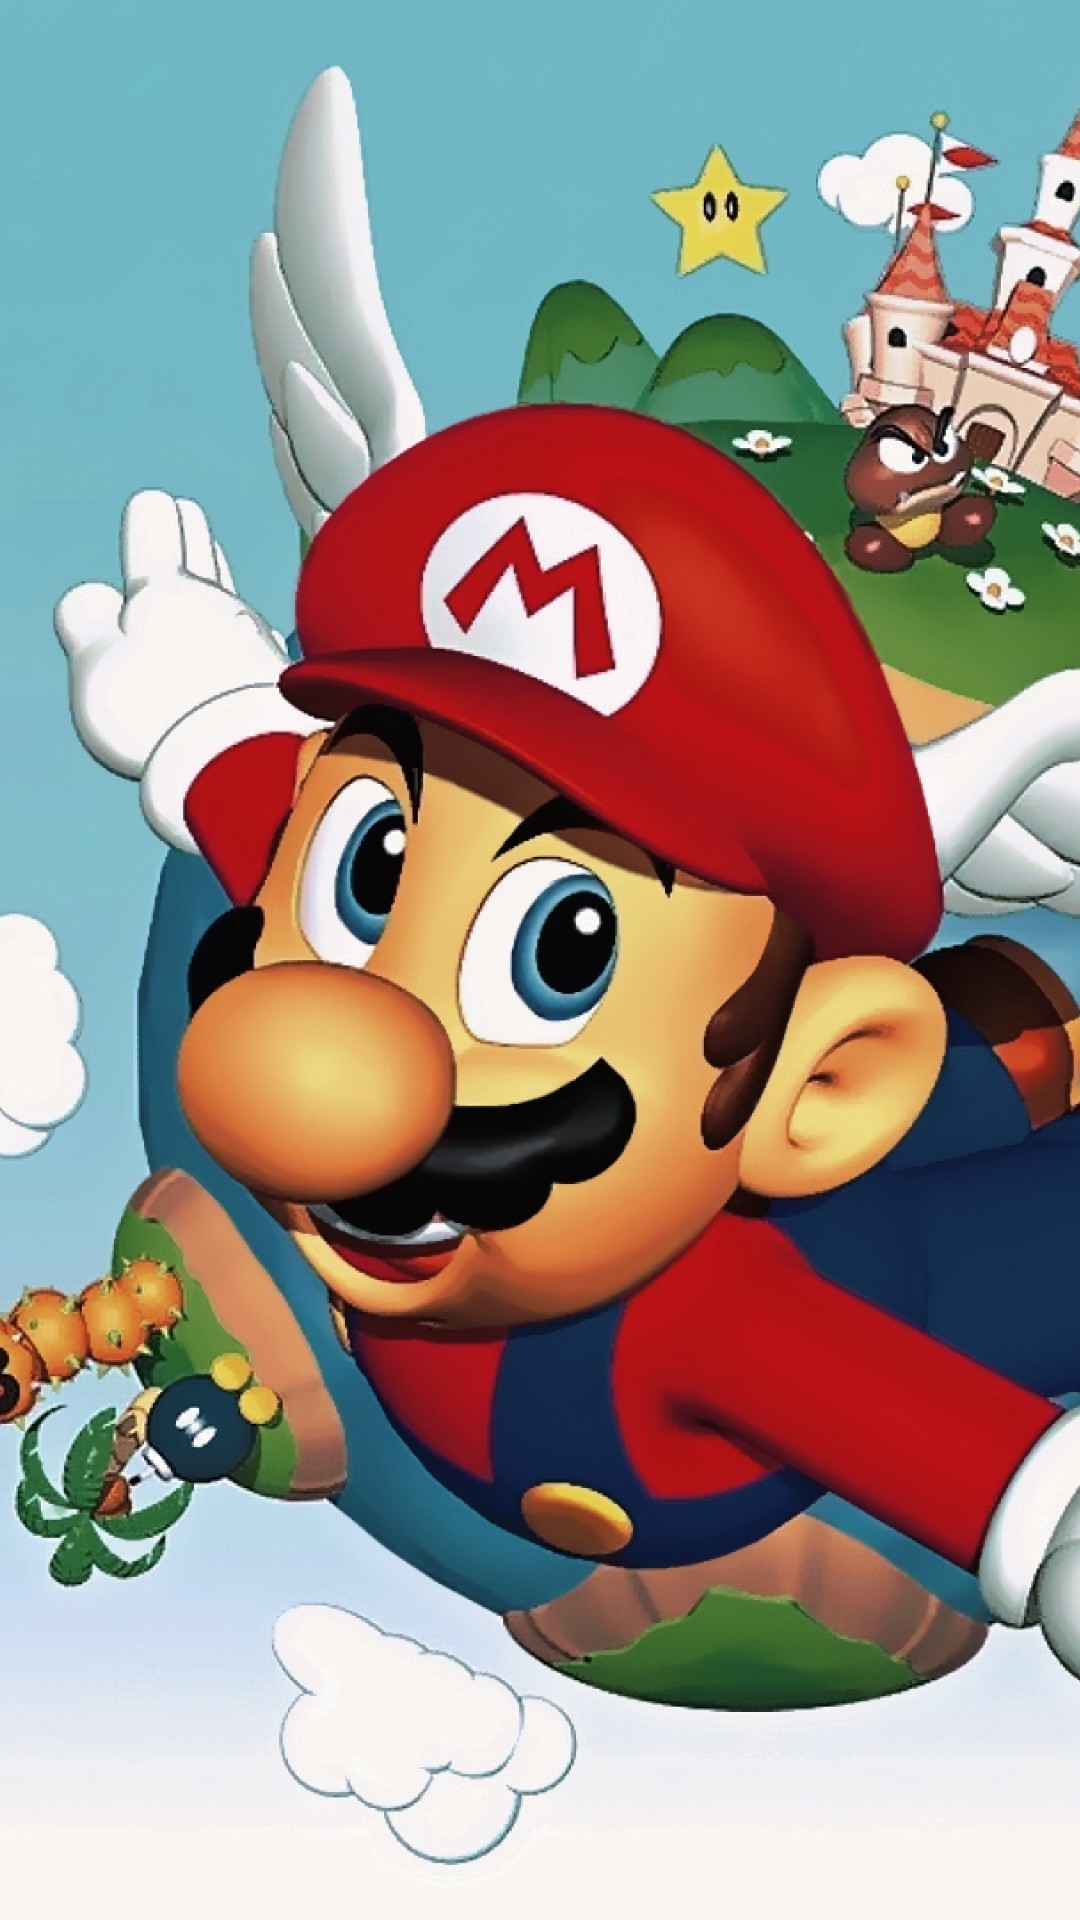 1080x1920 Super Mario 64 Quotes iPhone 6 Plus - Wallpaper ... src